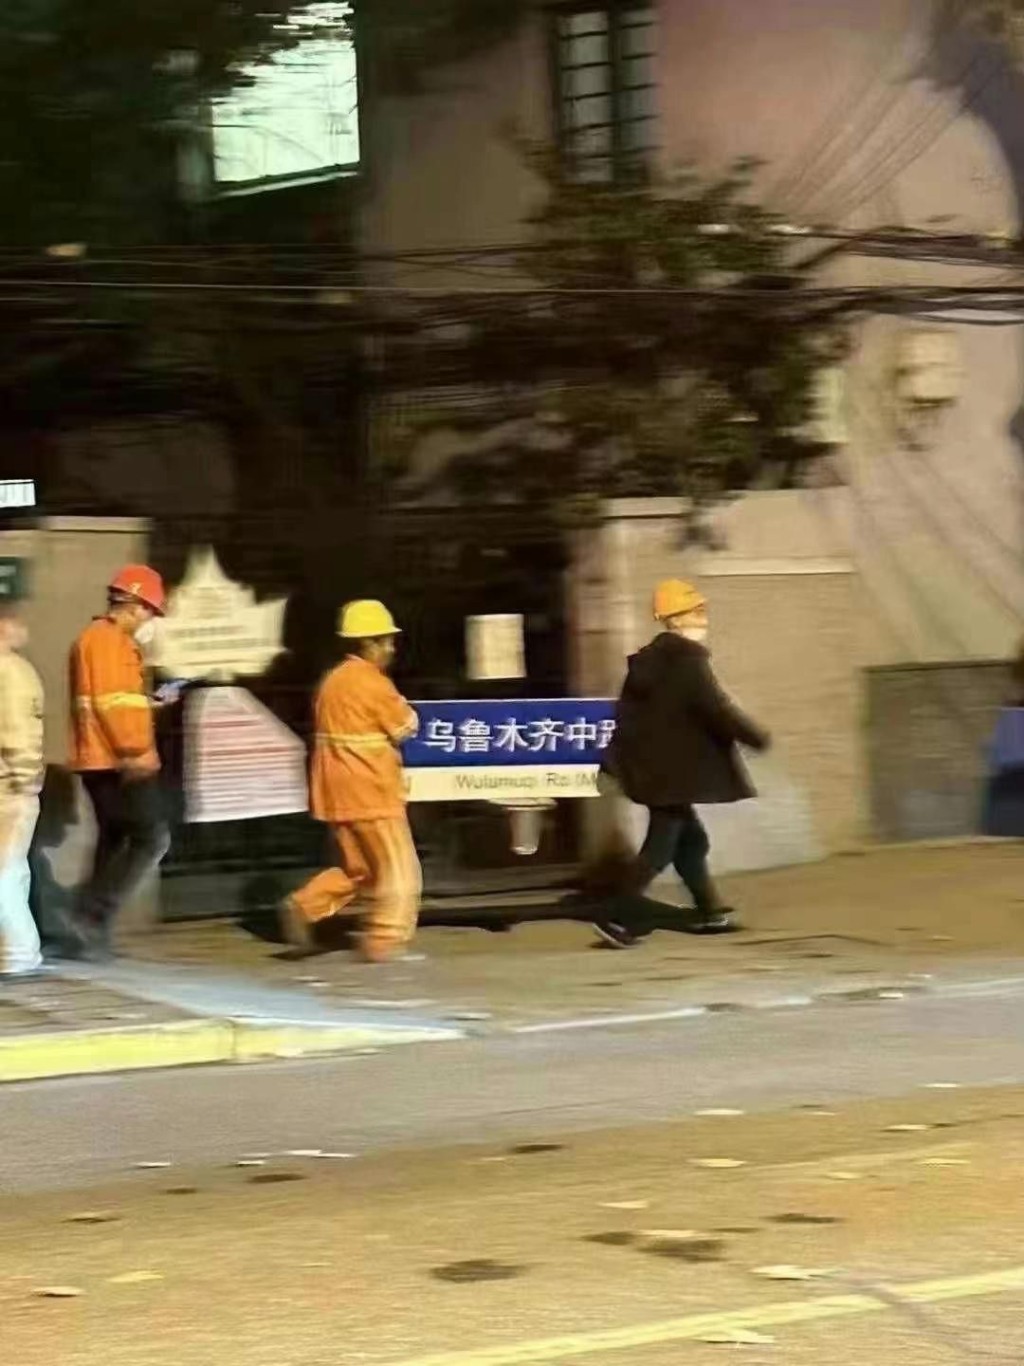 昨晚上海有工作人員拆走「烏魯木齊中路」路牌。互聯網